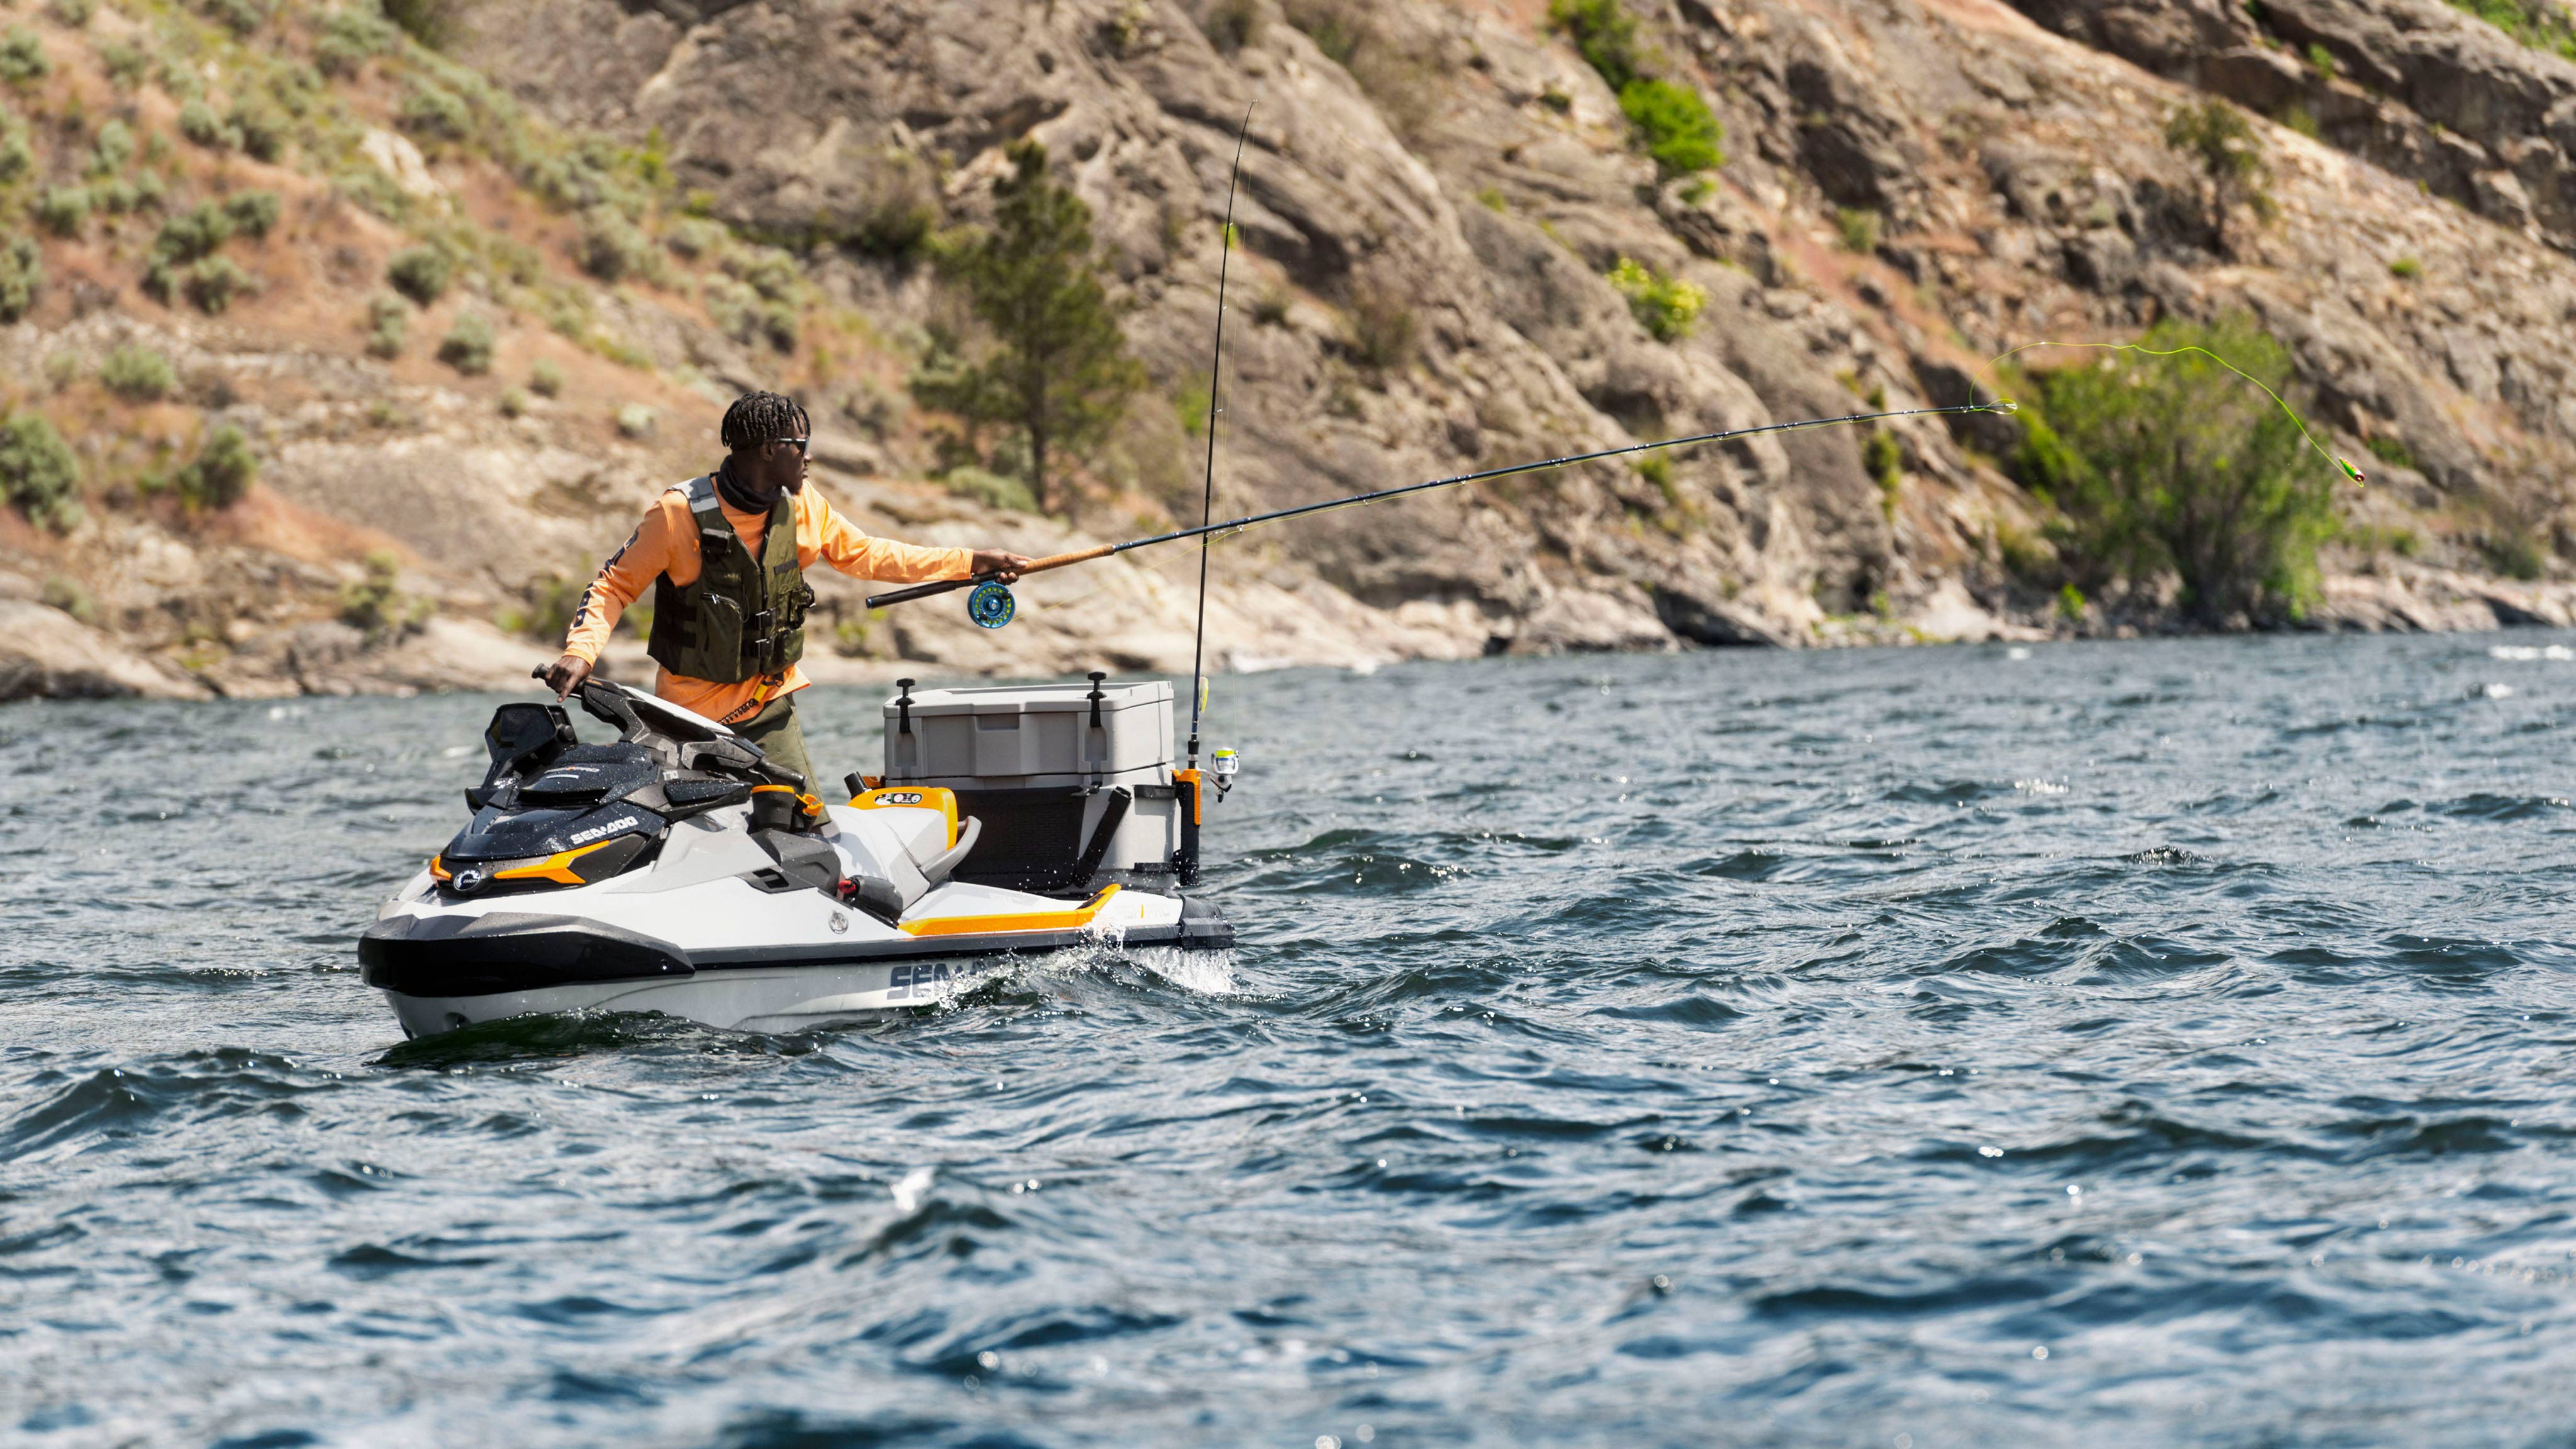 Emmanuel Williams kalastaa pitäessään Sea-Doo FishPro Trophy -veneen ohjaustankoa kädessään